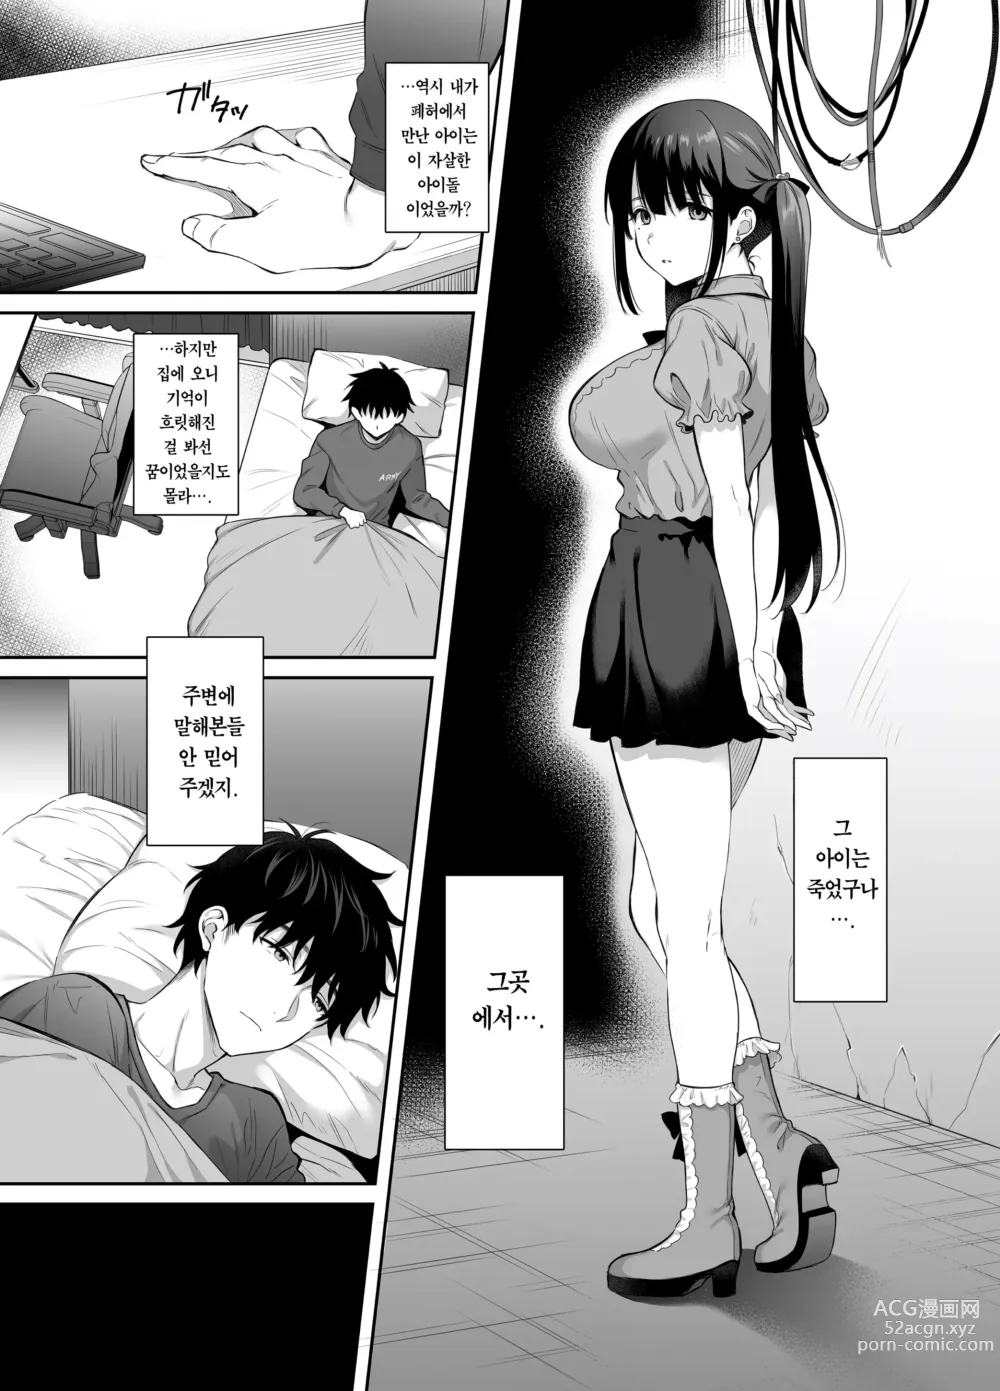 Page 8 of doujinshi 폐허에서 지뢰녀랑 밤새 질내사정 섹스한 이야기 2 (decensored)